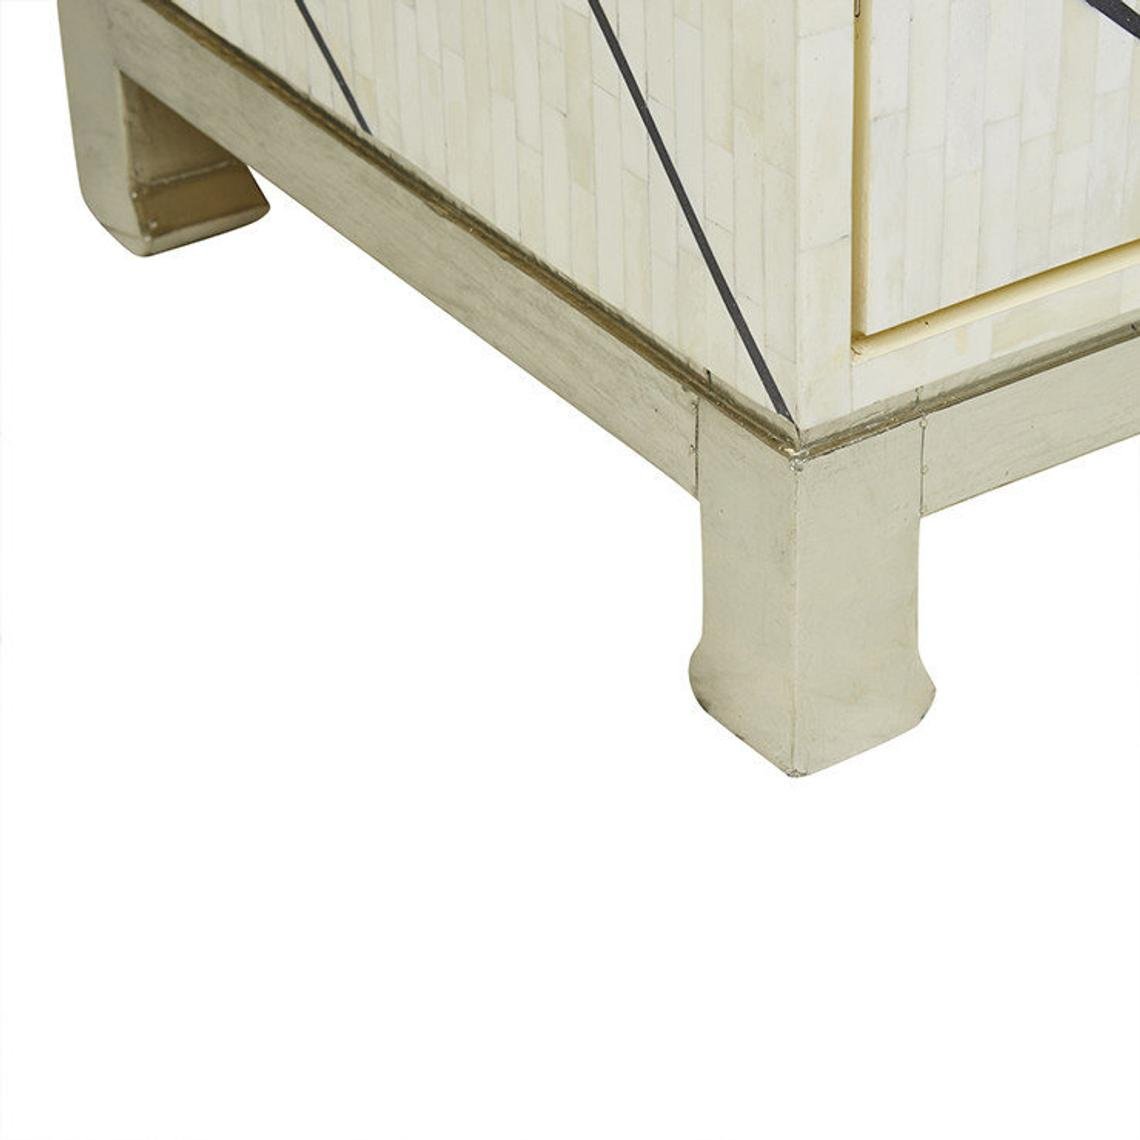 Handmade Bone Inlay Sideboard With Two Door | Indian Luxury Buffet Table Sideboard - Bone Inlay Furnitures